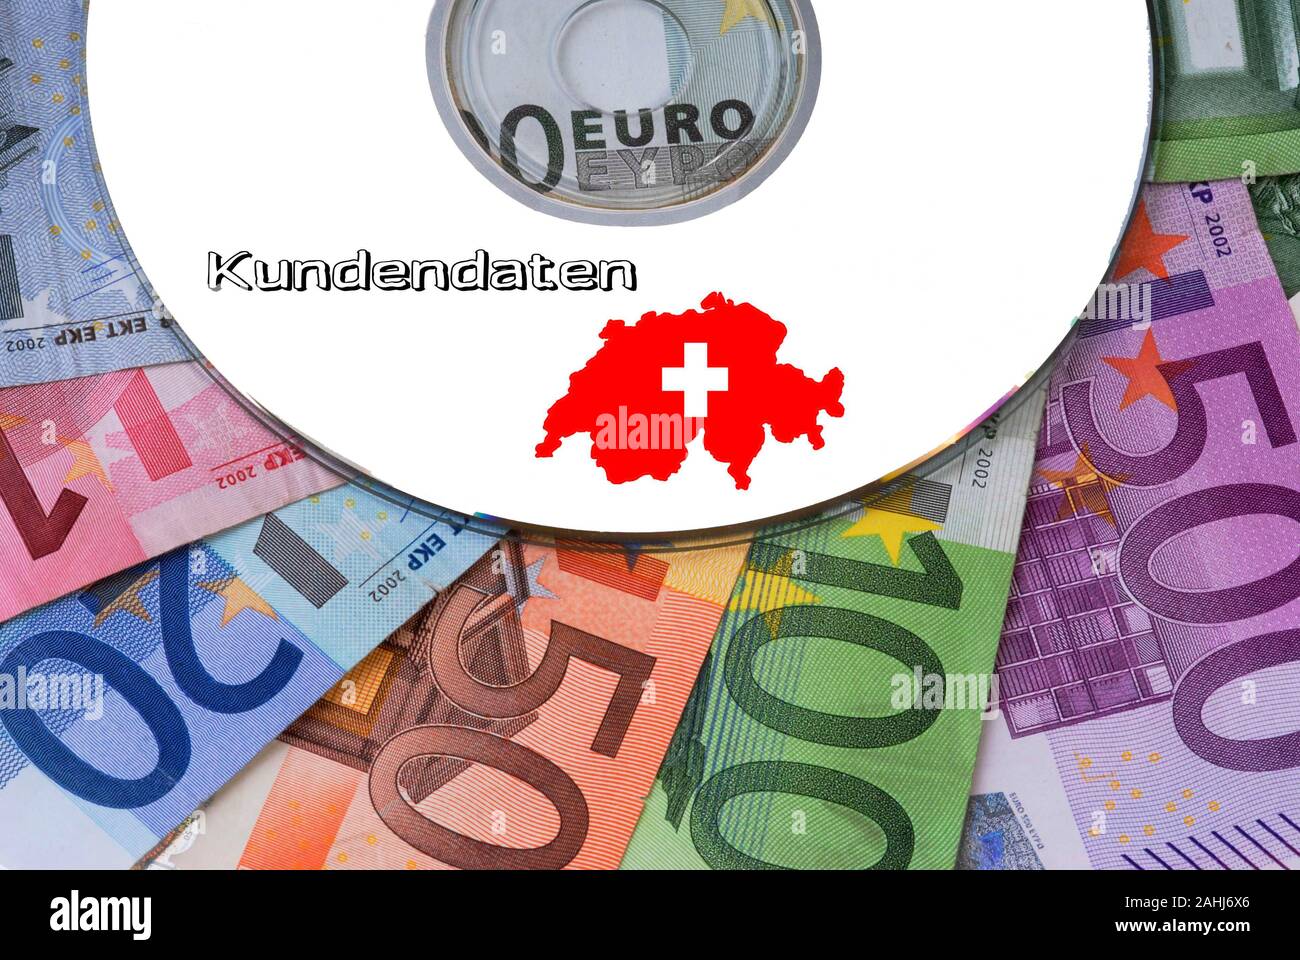 Schweizer Kundendaten auf CD, Bankgeheimnis, Geldpolitik, Schwarzgeld, Stock Photo